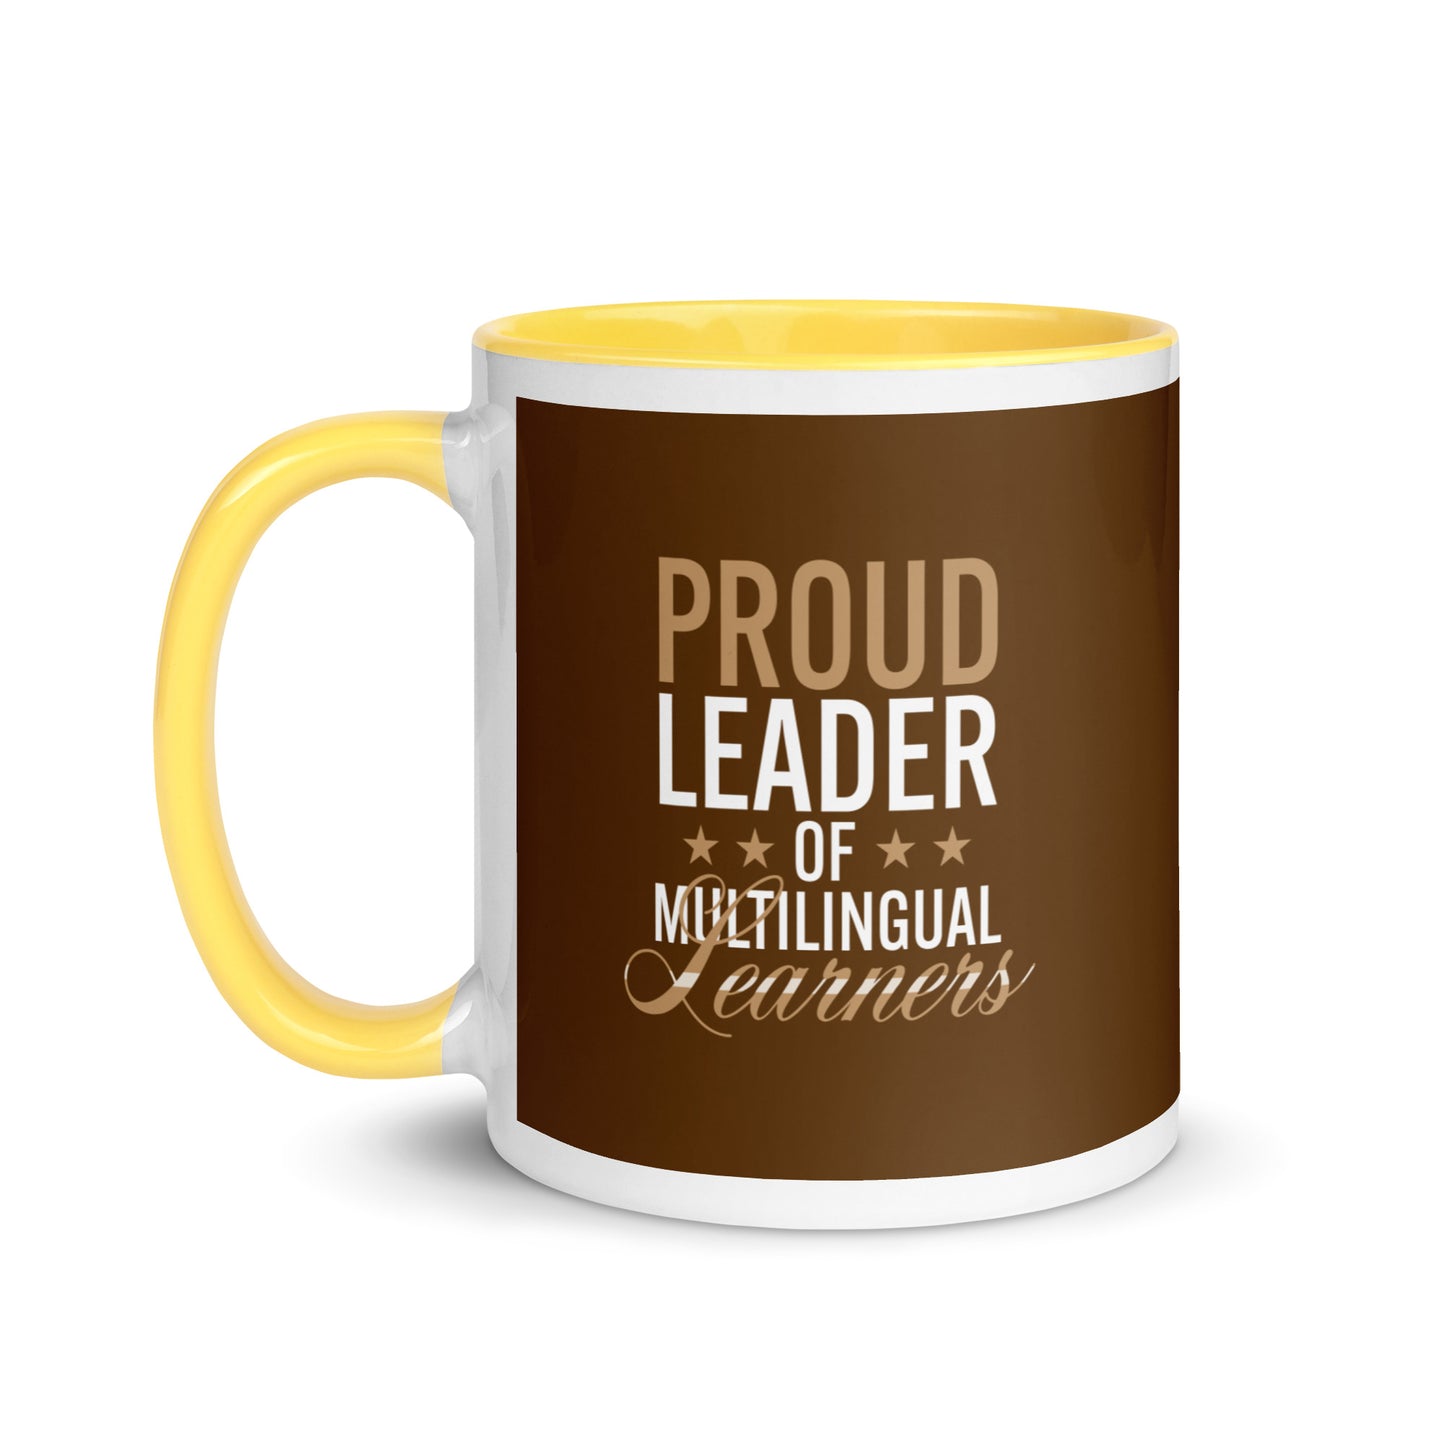 Multilingual Learner Mug with Color Inside